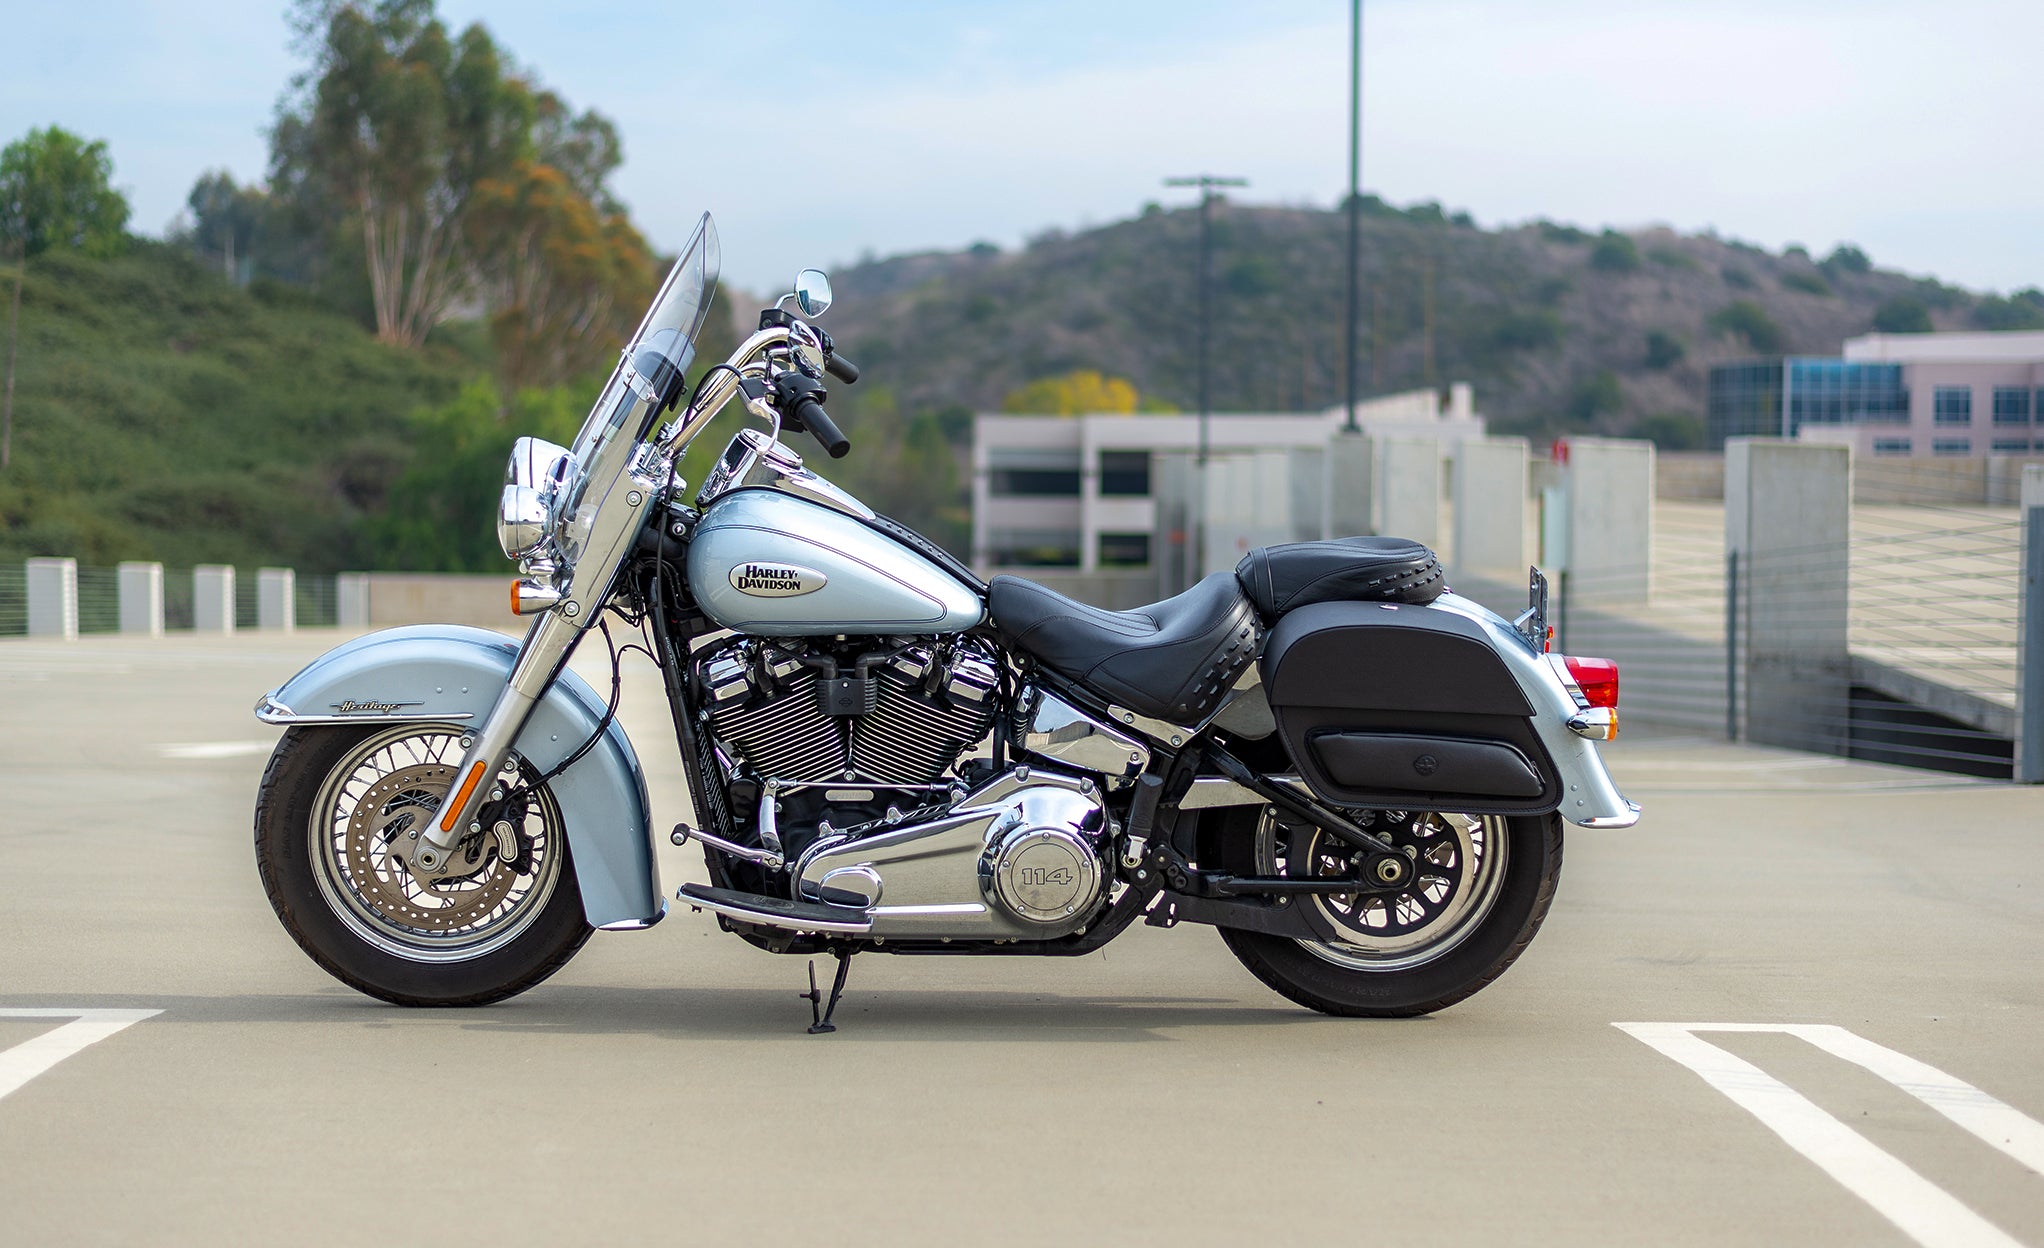 Viking Pantheon Medium Leather Motorcycle Saddlebags For Harley Davidson Softail Heritage Flst I C Ci @expand